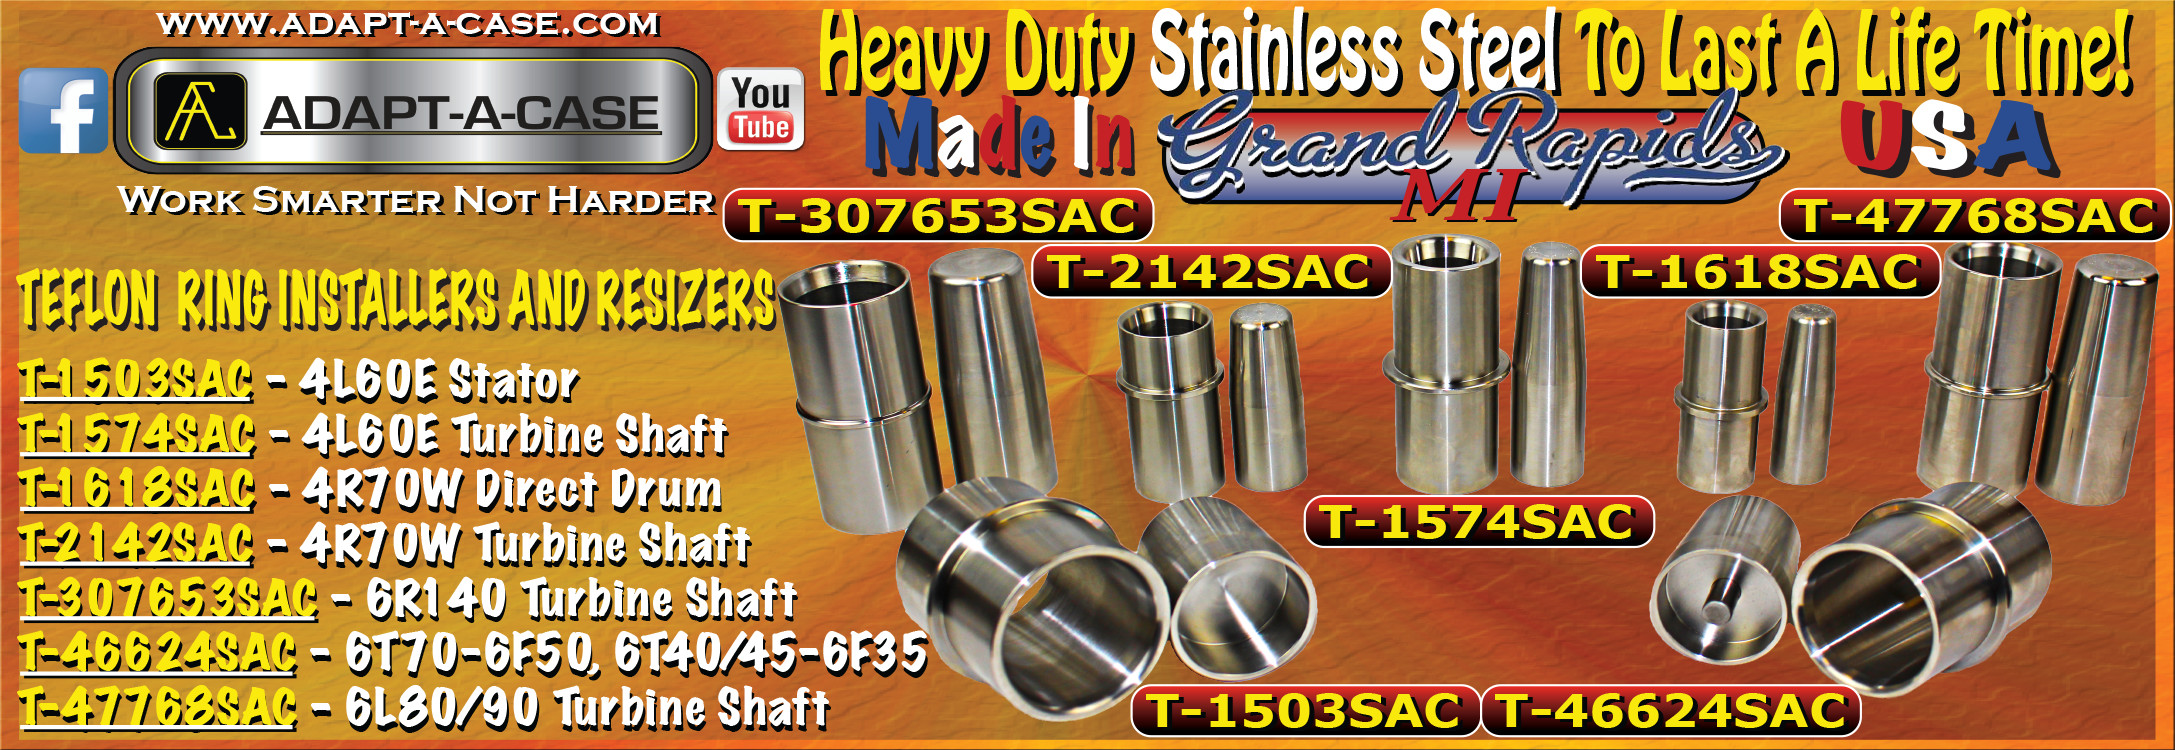 Stainless Steel Teflon Ring Installers